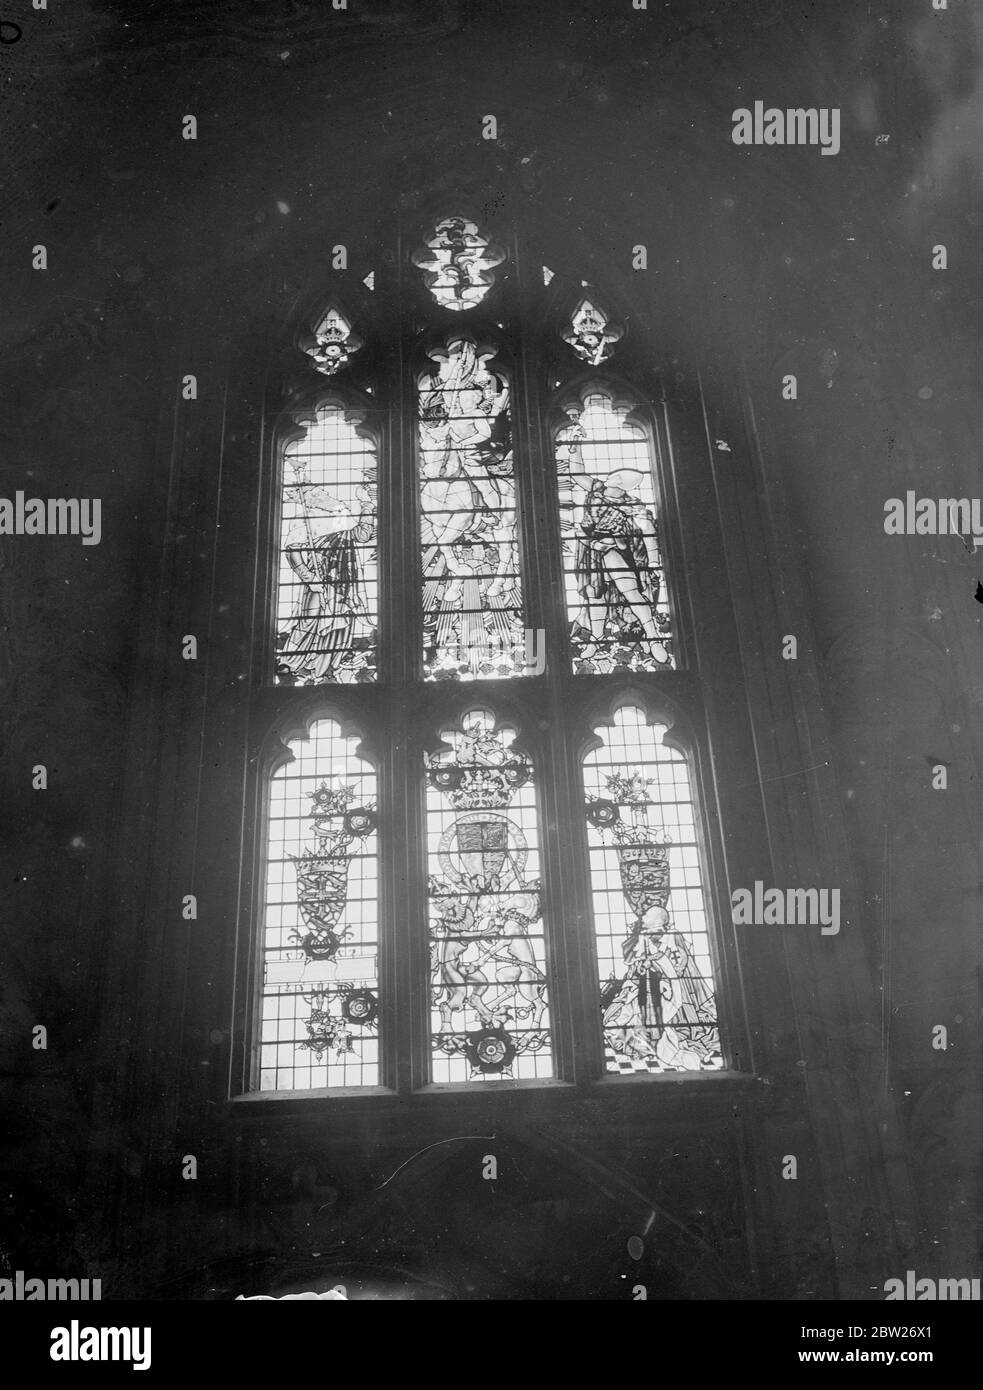 Joseph P. Kennedy, der amerikanische Botschafter, Enthüllt in der Kathedrale von Winchester ein Buntglasfenster, das der Kathedrale von den Amerikanern als Tribut an das Leben und den Charakter von König George V geschenkt wurde.eines der Lichter enthält eine Darstellung der knienden Figur des Königs, der die Roben des "Ordens von Der Strumpfhalter. Das Fenster ist das Werk von Hugh Easton. Foto zeigt, das Buntglasfenster nach der Enthüllung. 12 Juli 1938 Stockfoto